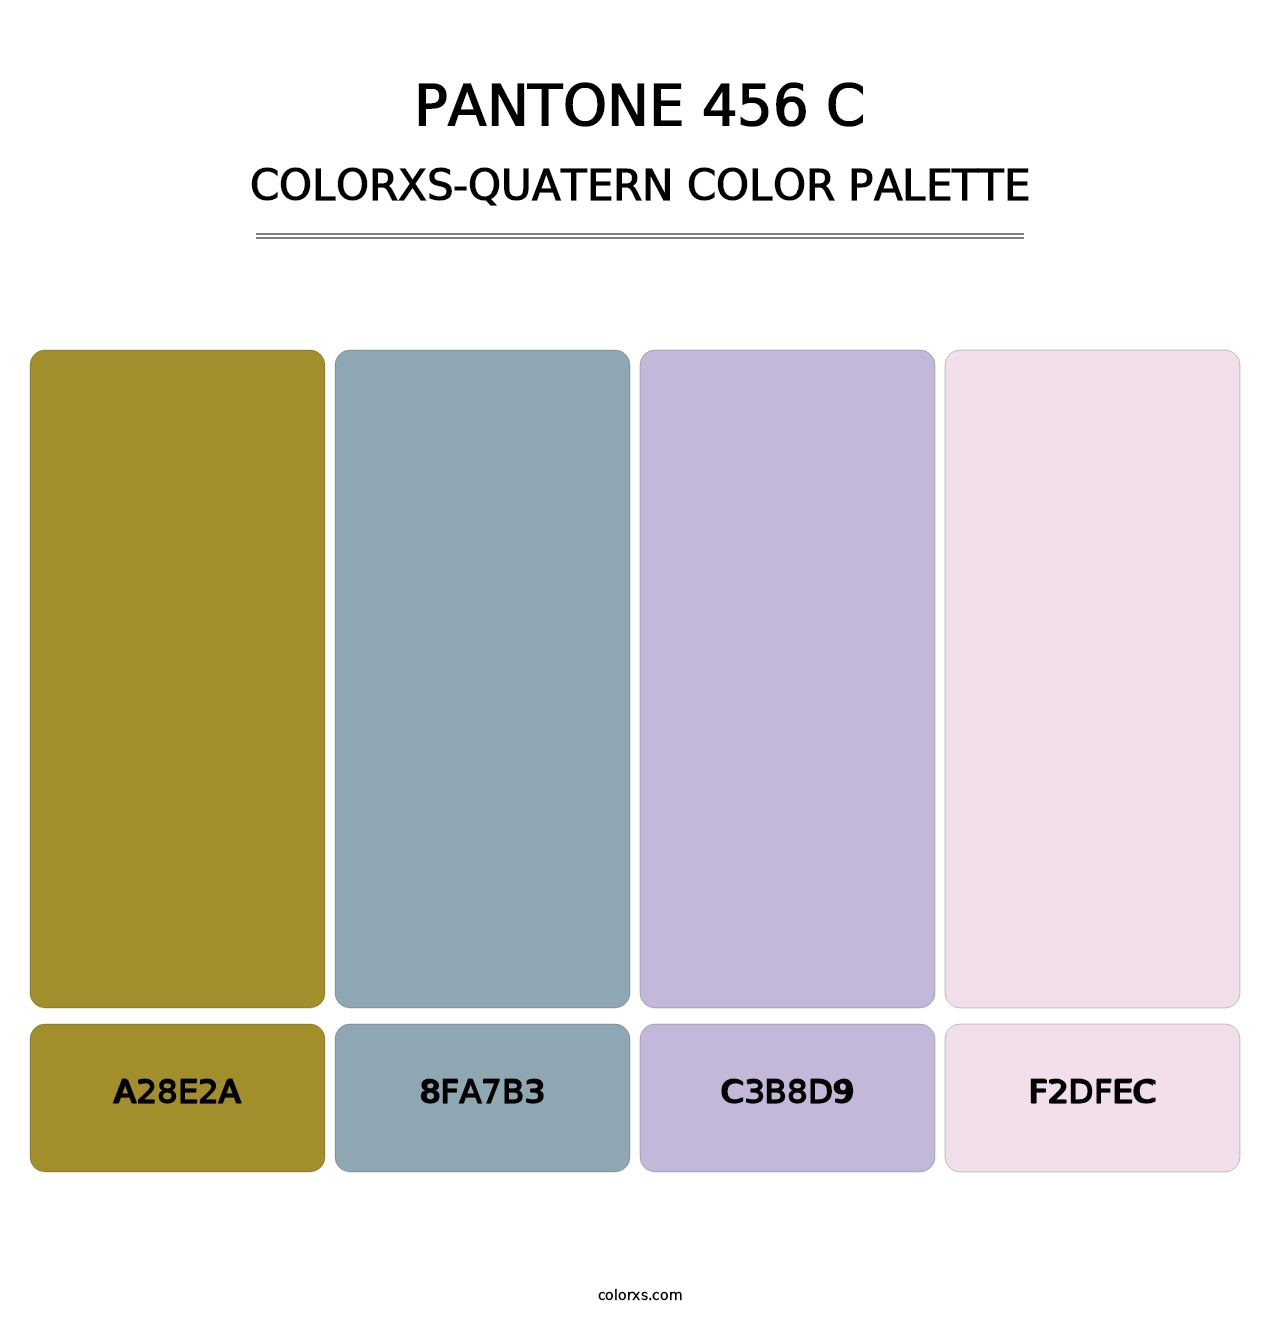 PANTONE 456 C - Colorxs Quatern Palette